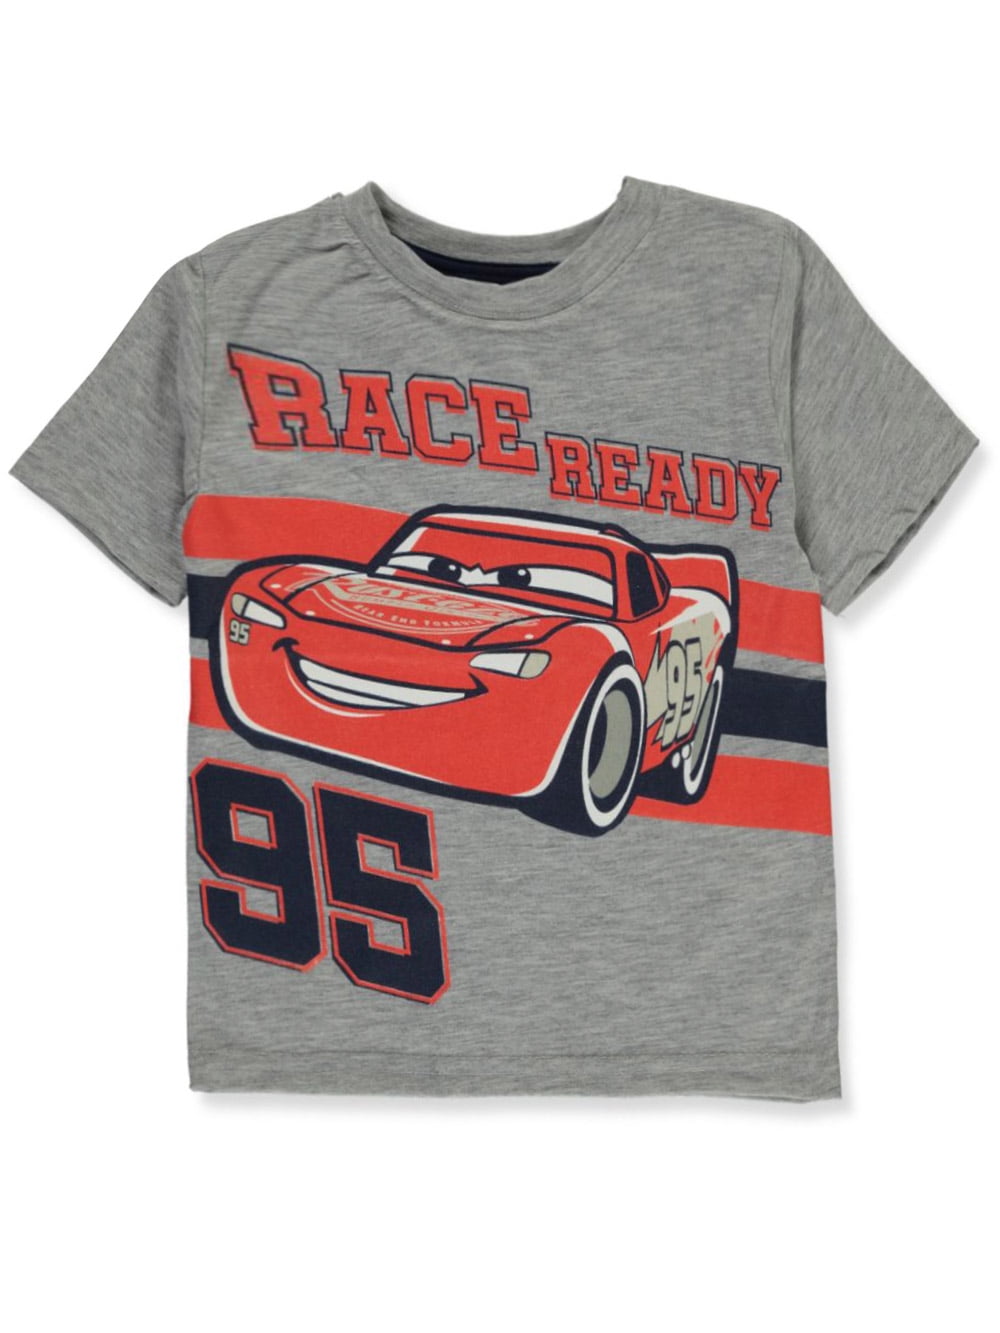 Disney Cars Lightning MCQUEEN T-Shirt Shirt Pulli Baumwolle braun 80 86 92 NEU! 